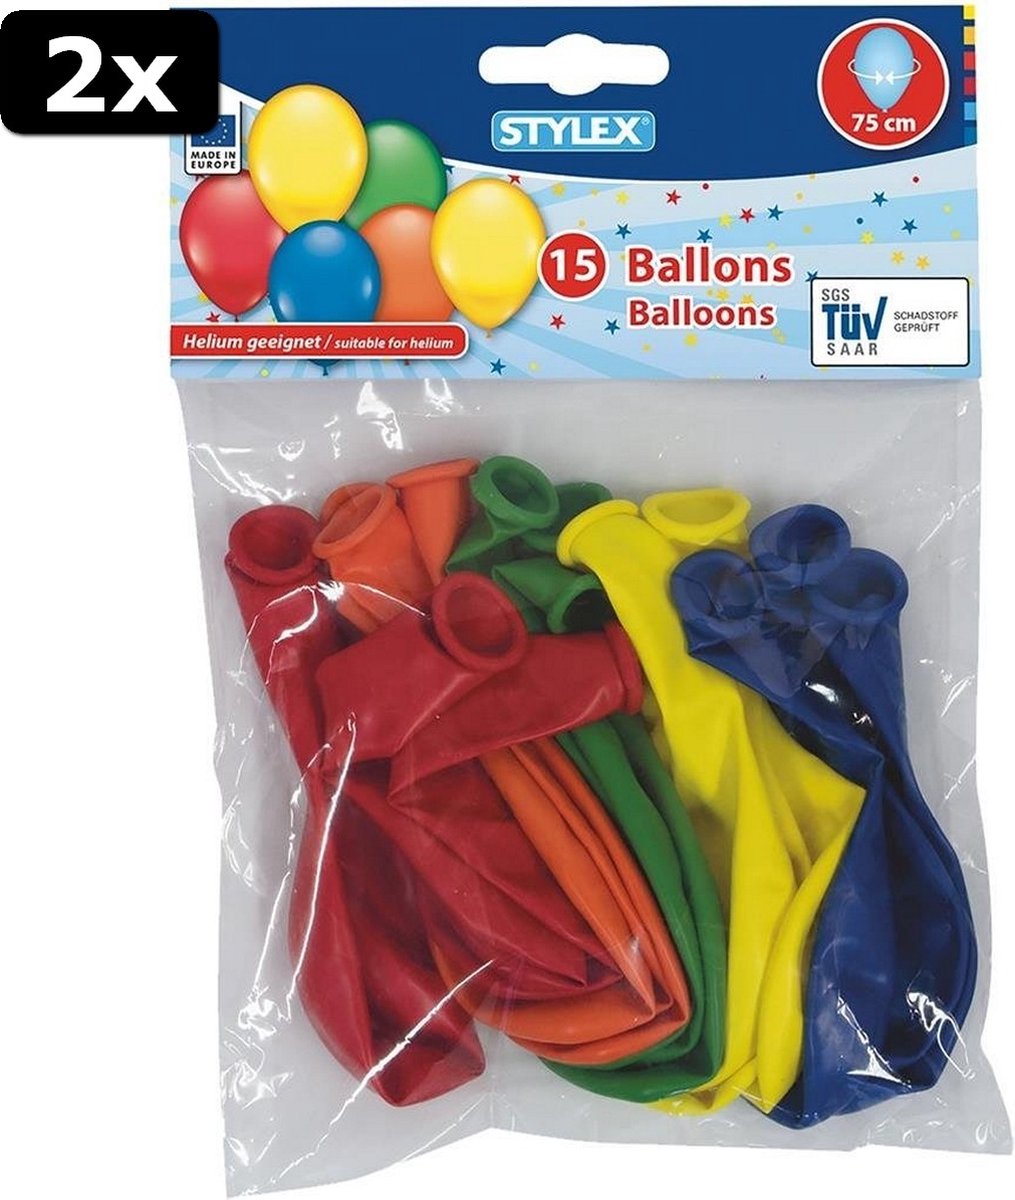 2x Stylex Helium Ballonnen 75 cm 15 Stuks